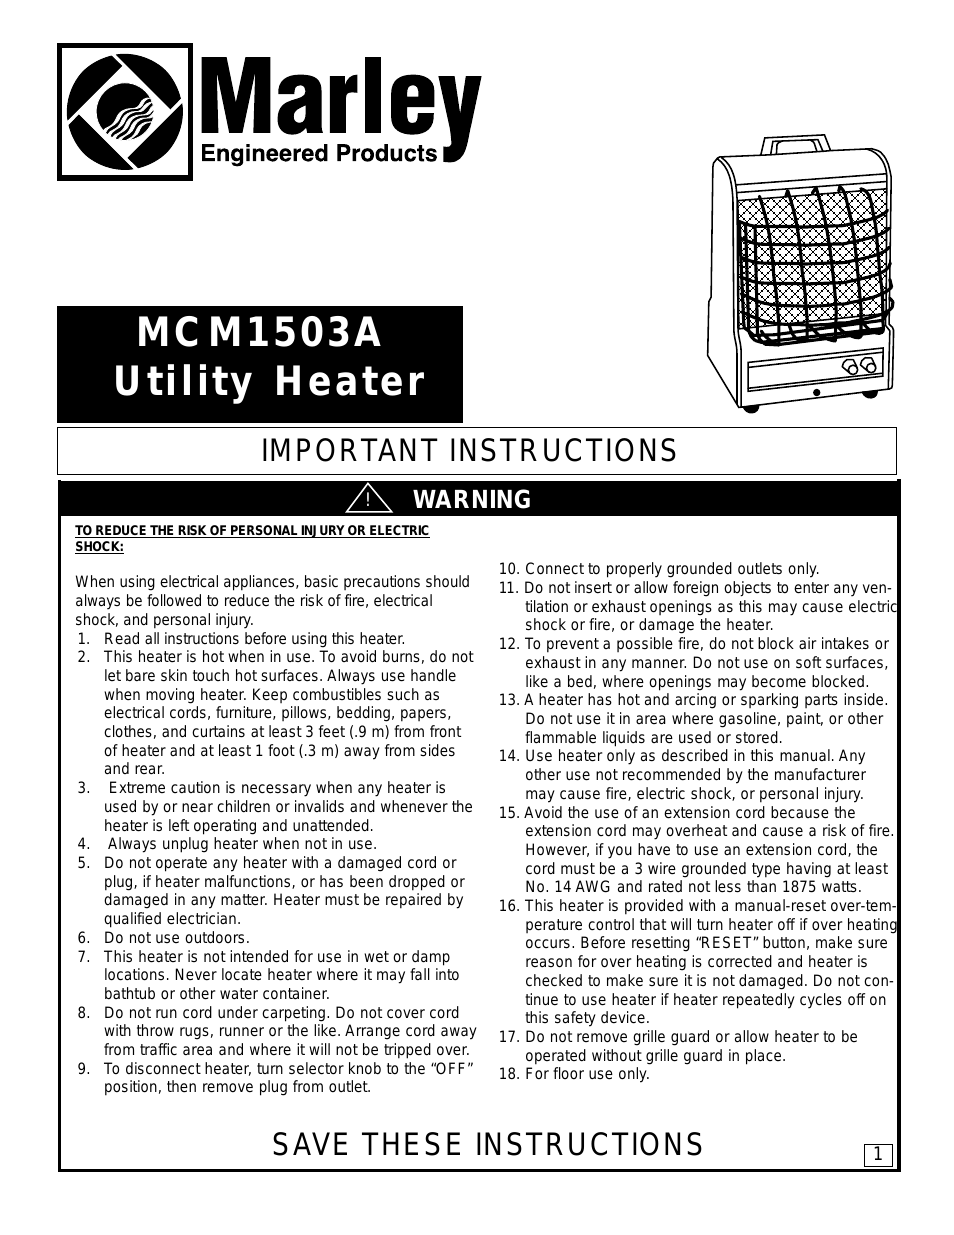 Marley Utility Heater MCM1503A